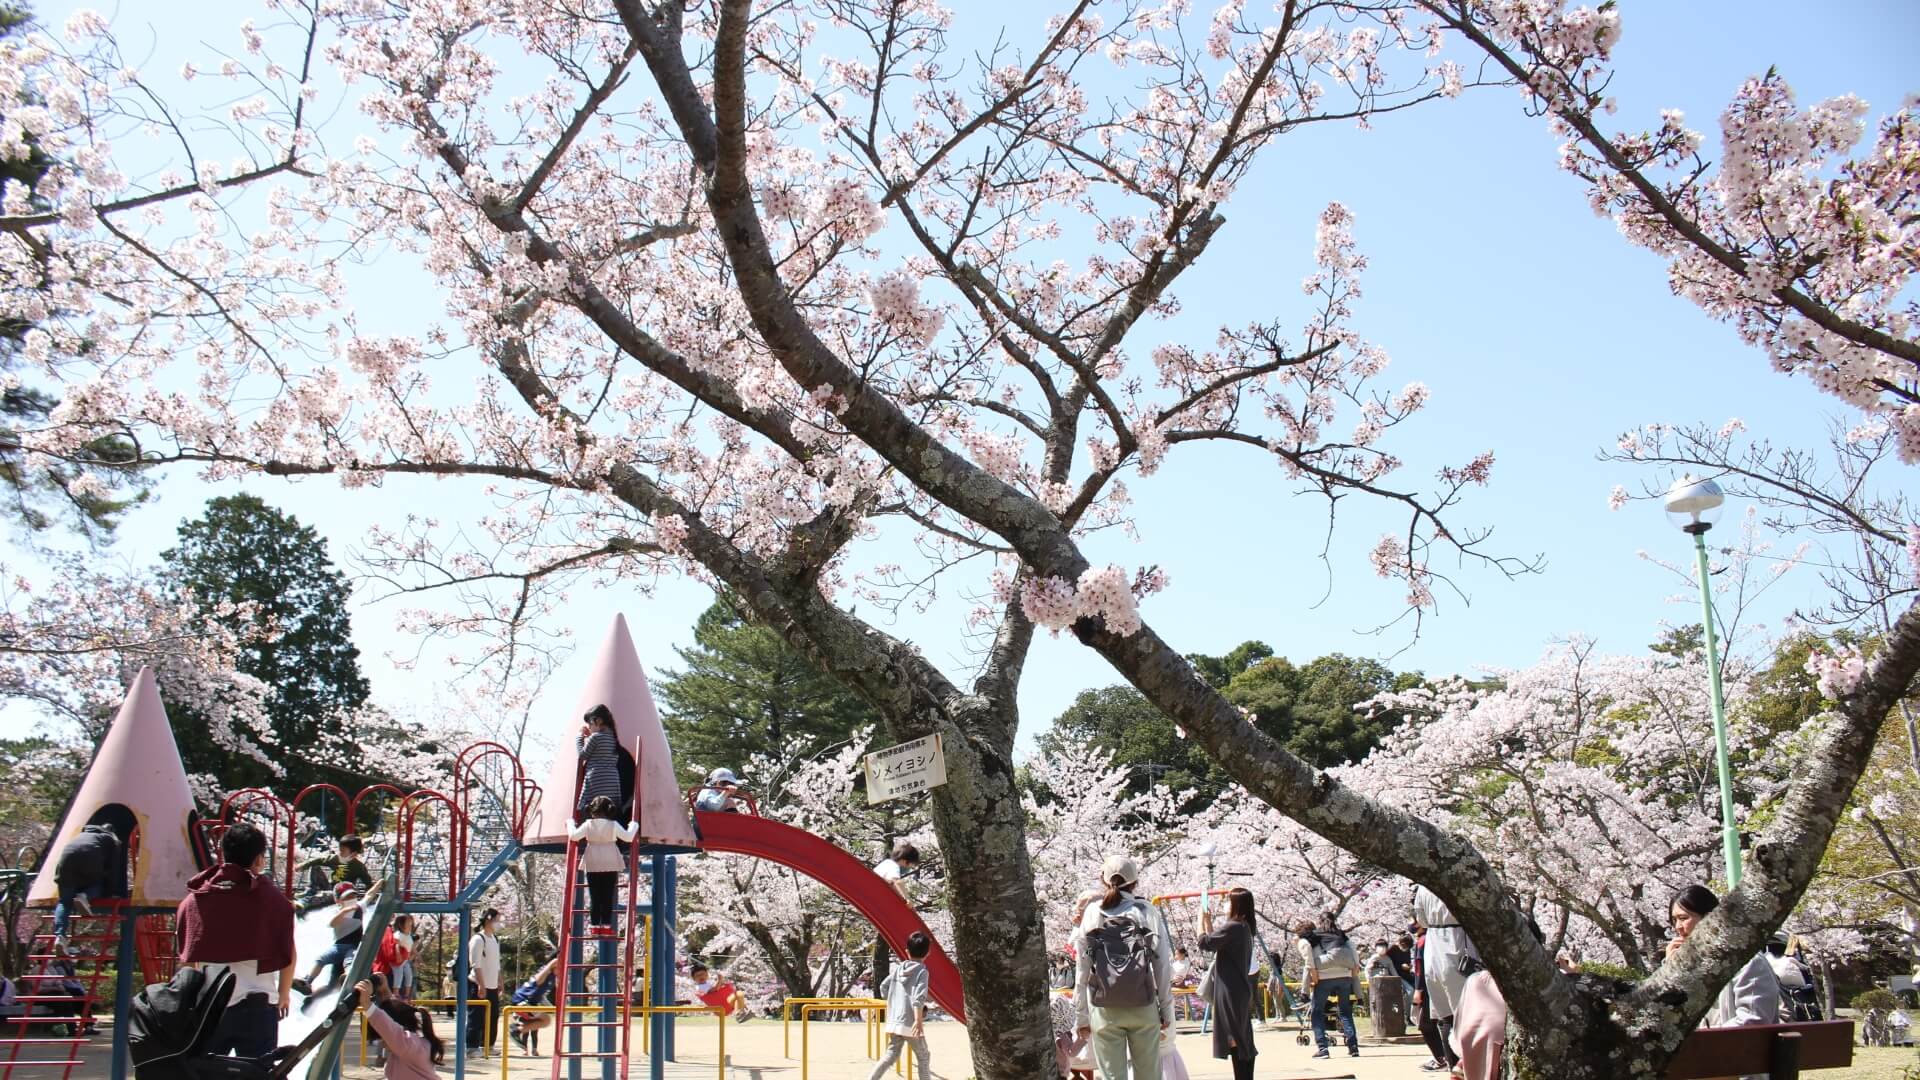 津偕楽公園の桜と遊具で遊ぶ子どもの様子